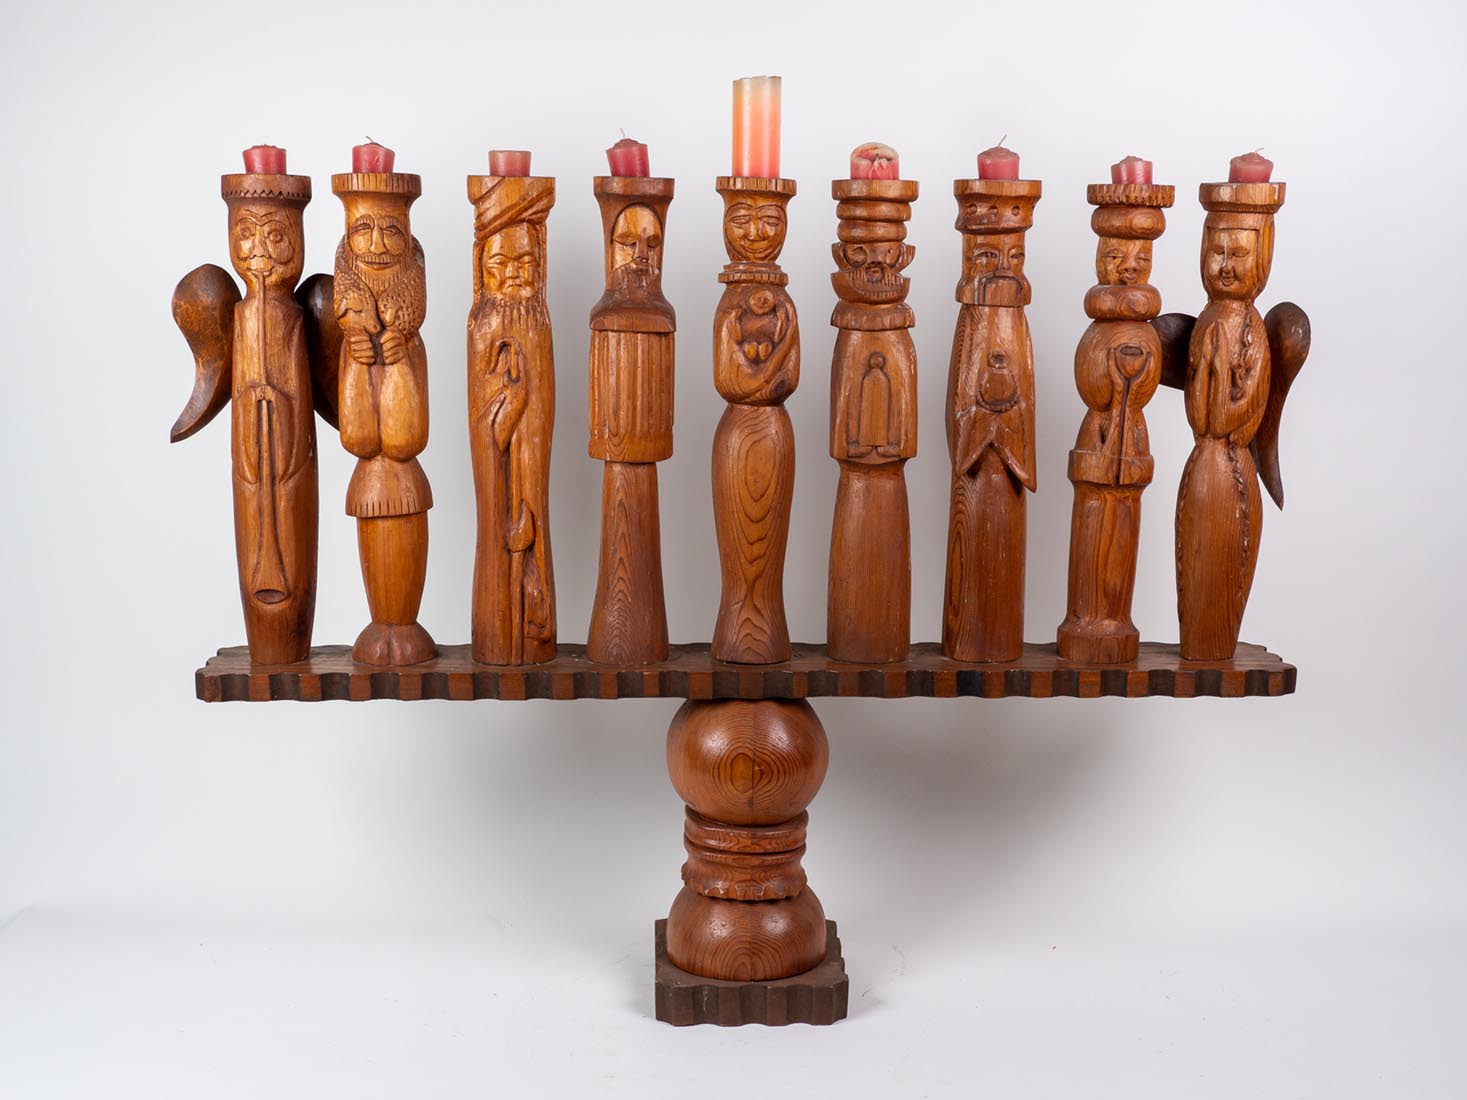 Wood Menorah - wood sculpture by Marjorie White Williams